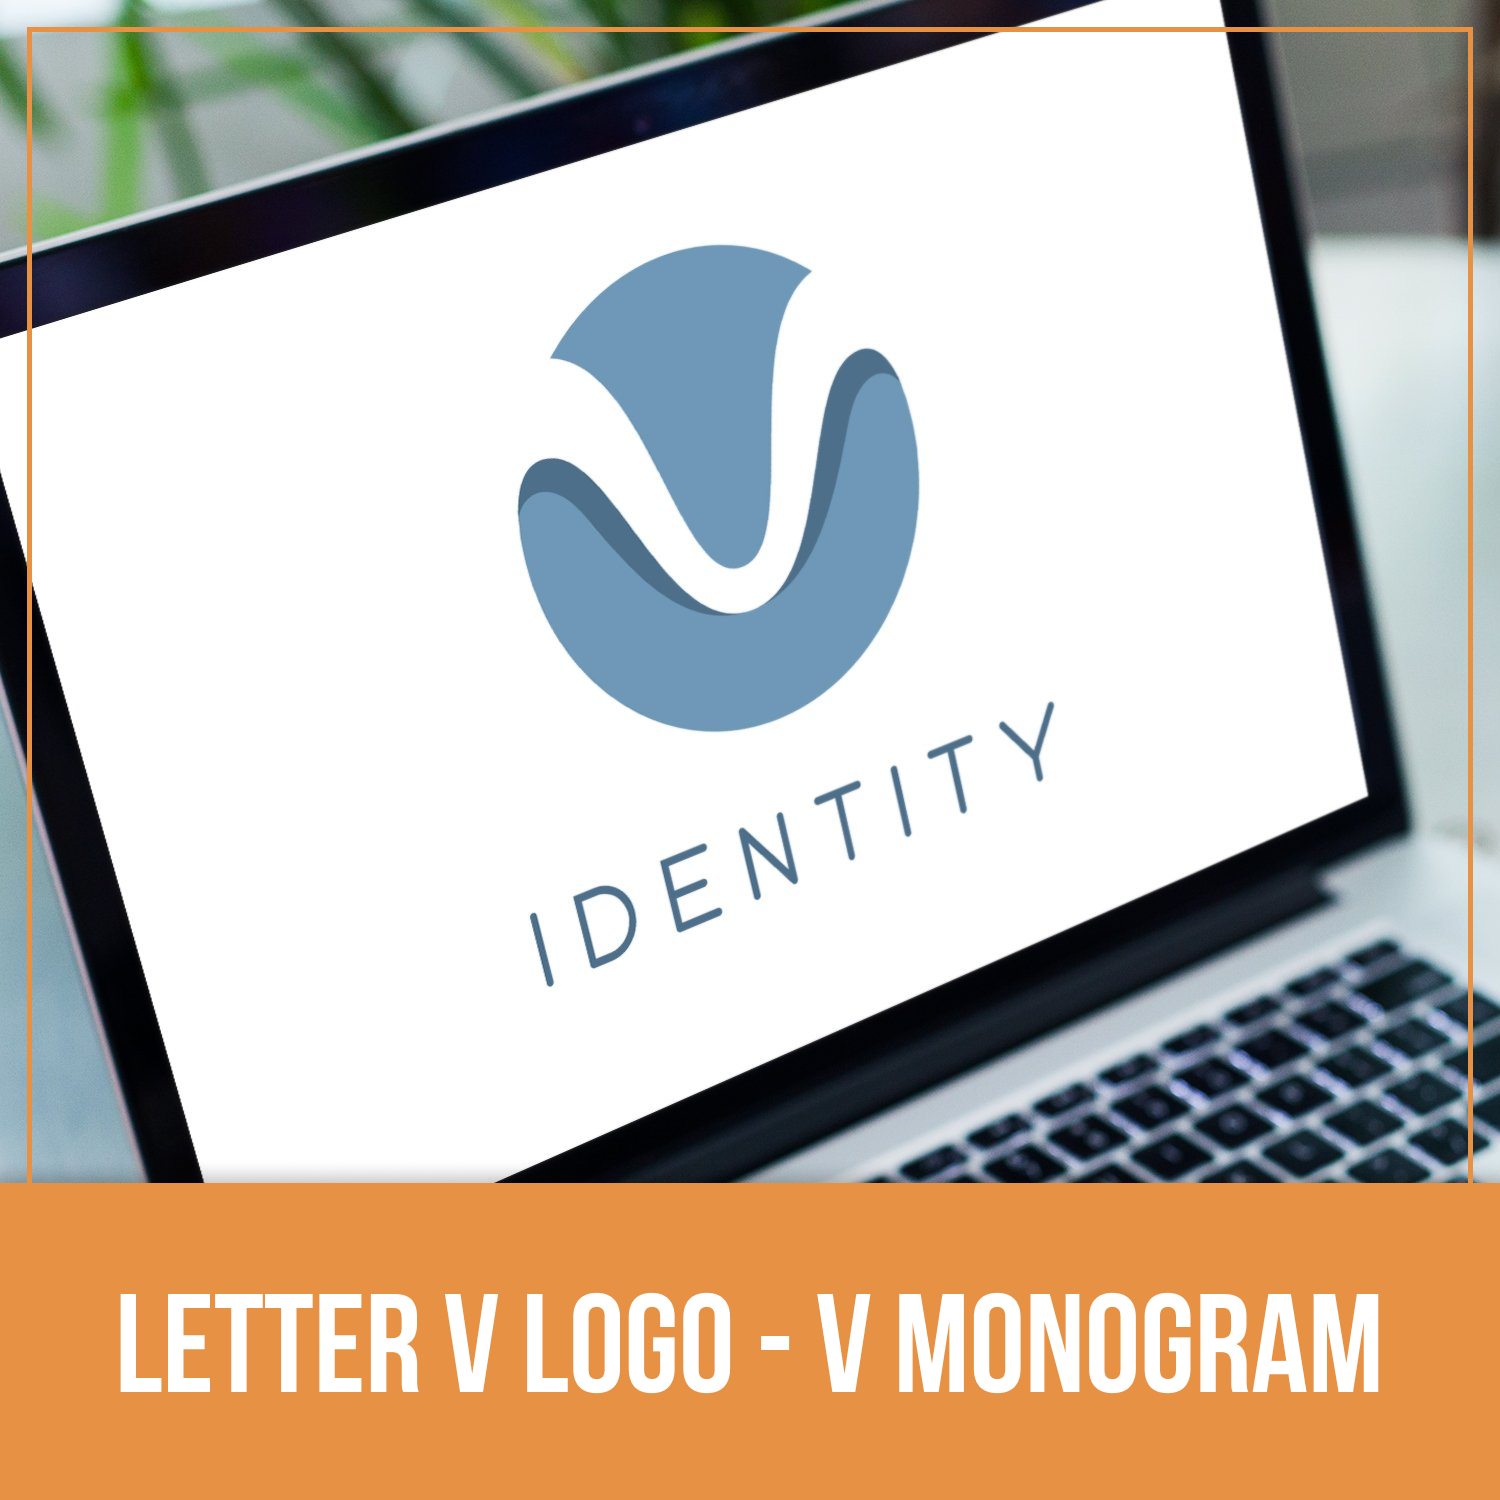 Letter V Logo - V Monogram cover.